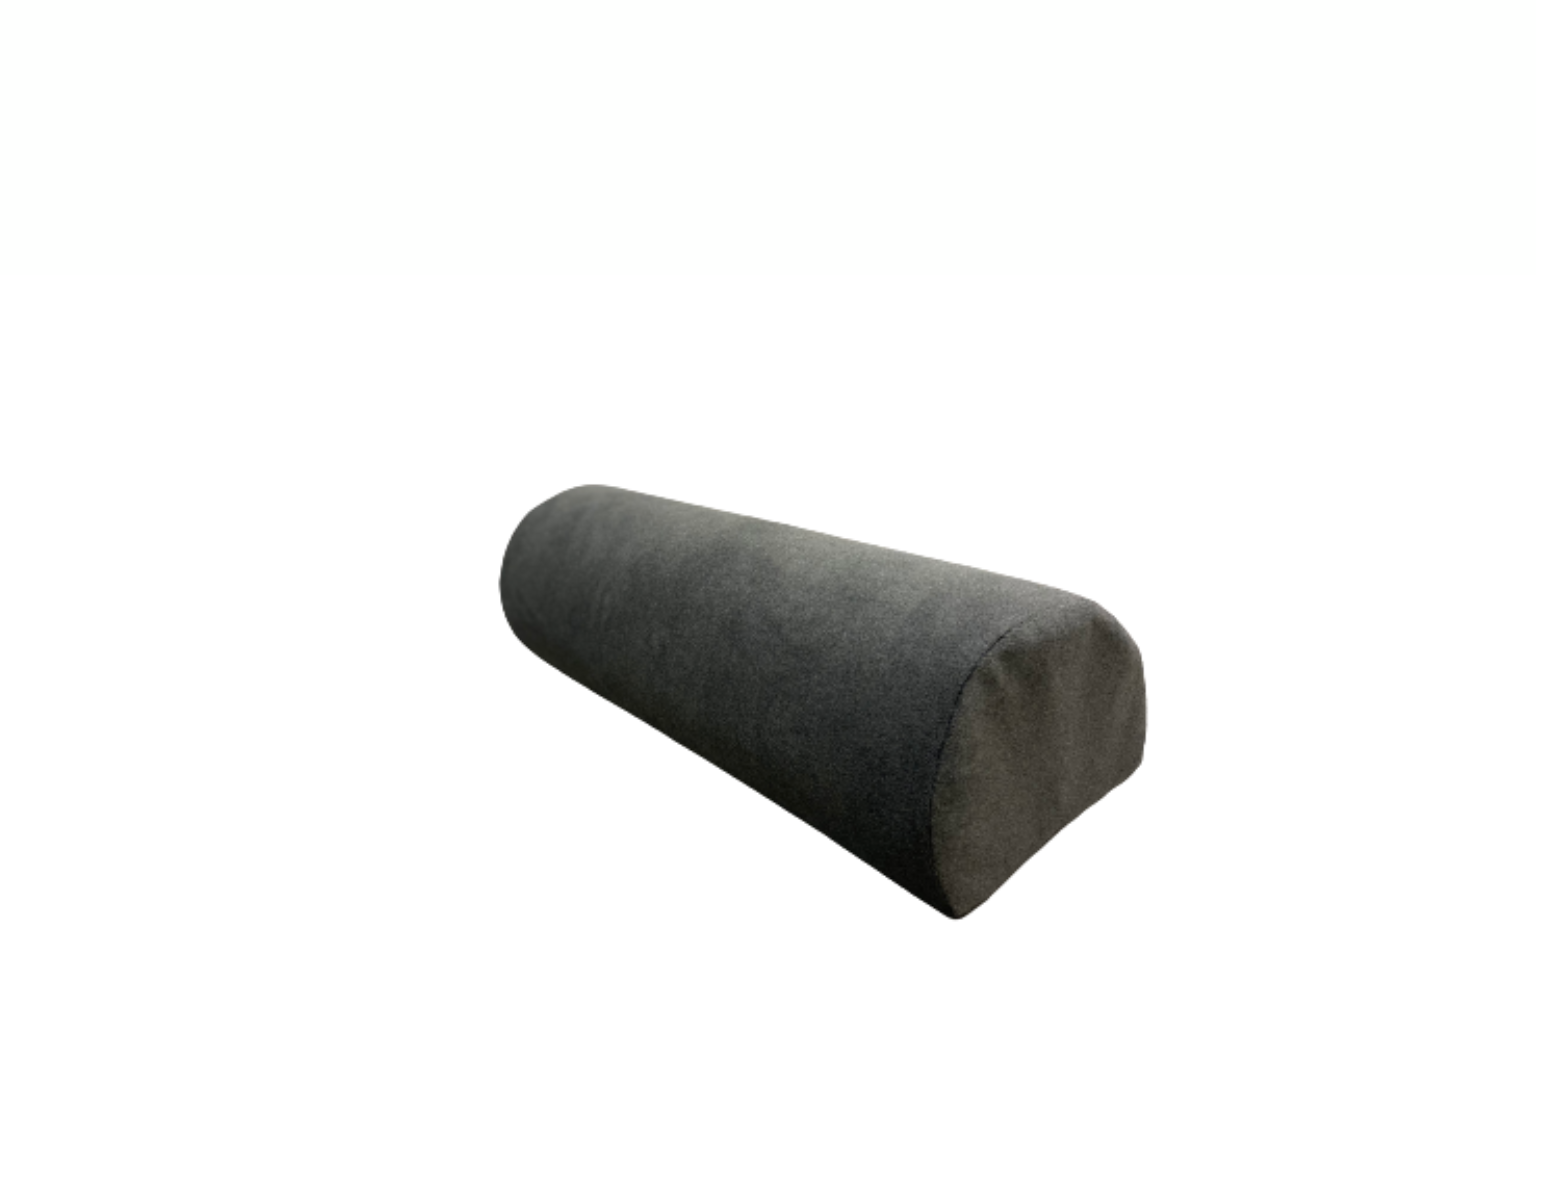 HygienePRO Rouleau genoux désinfectable - Soft Touch - gris foncé/charcoal